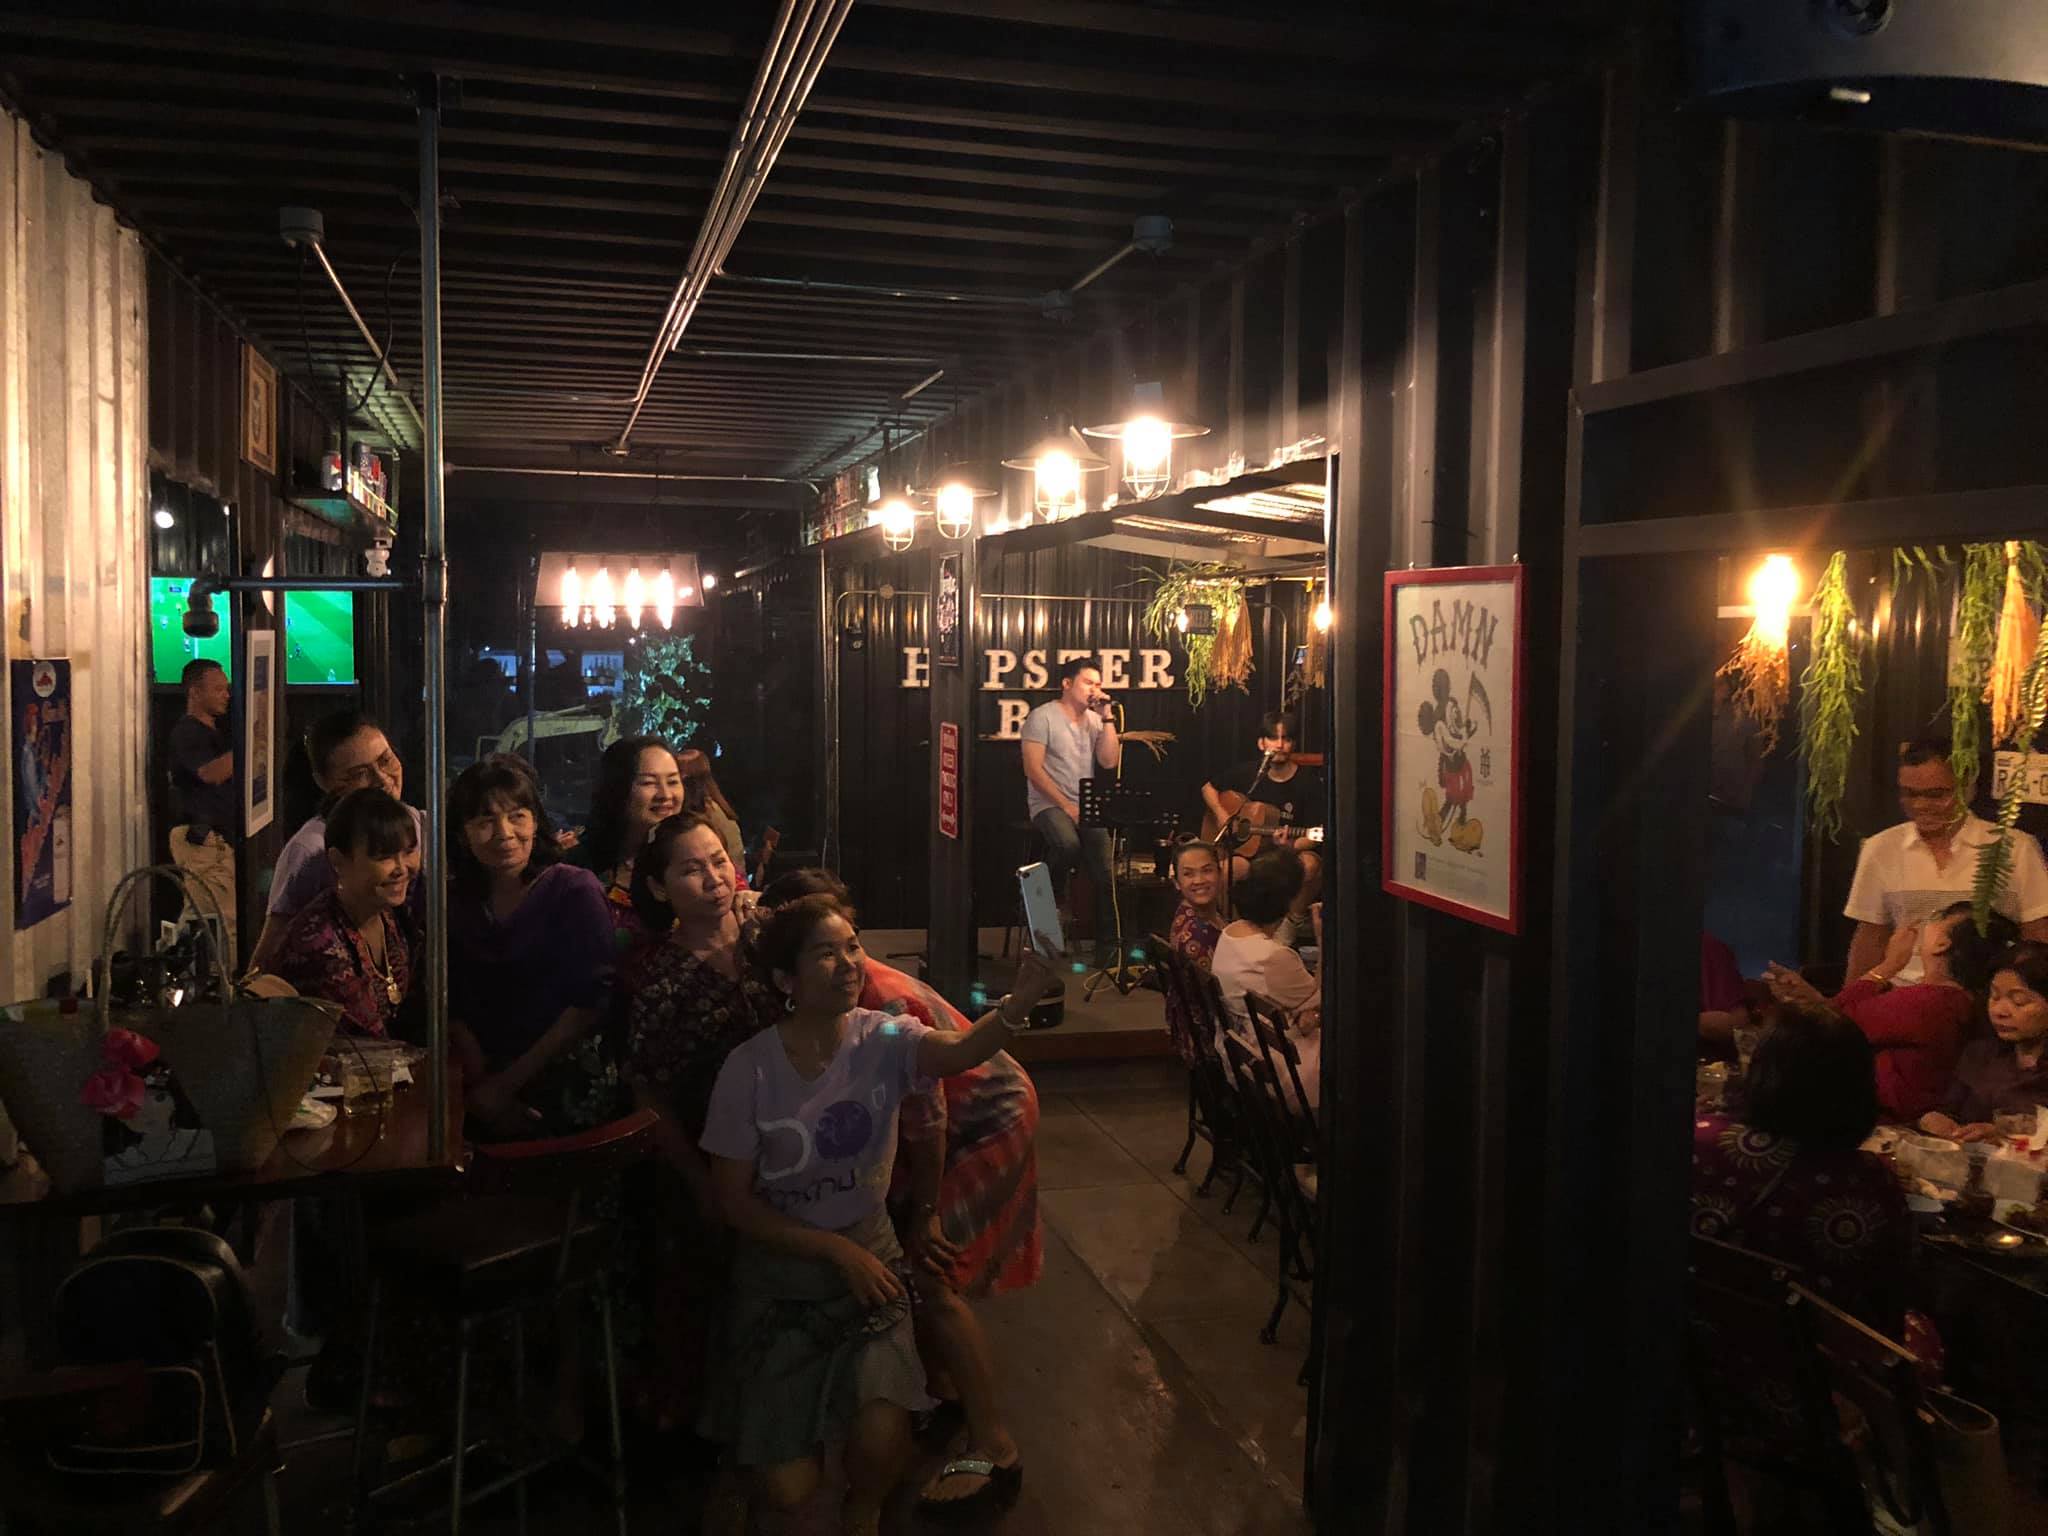 ฮอฟสเตอร์ บาร์ (Hopster Bar cafe & restaurant) : พระนครศรีอยุธยา (Phra Nakhon Si Ayutthaya)